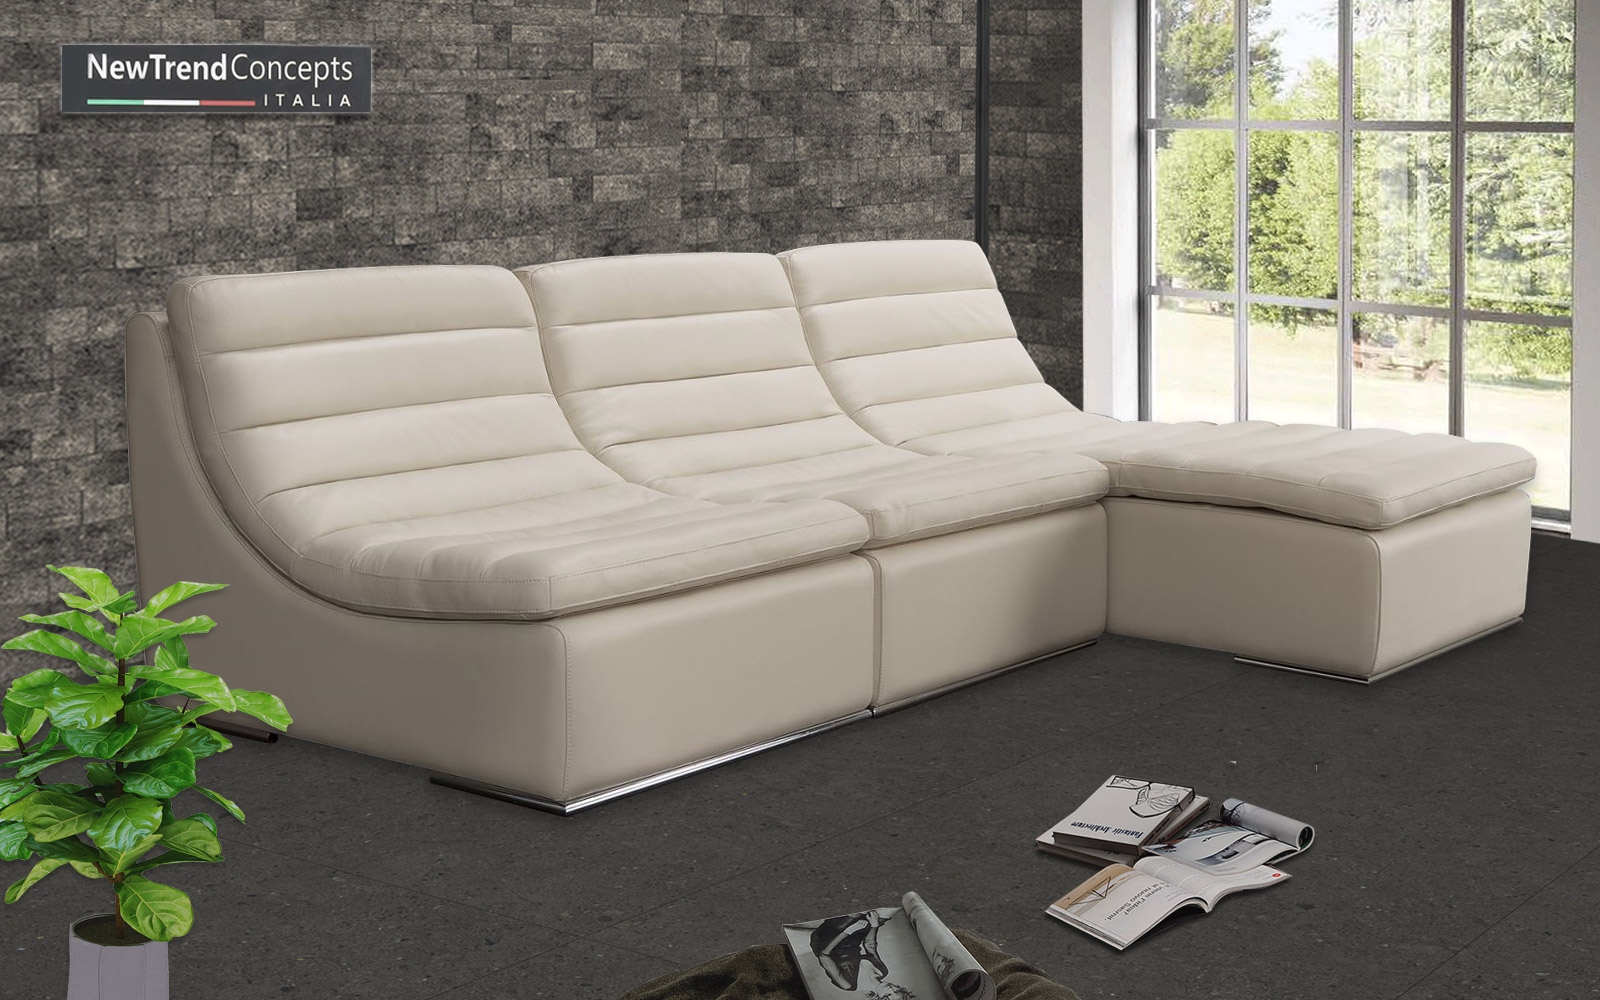 Ghế sofa góc hiện đại và những không gian đặt lí tưởng nhất - Ảnh 3